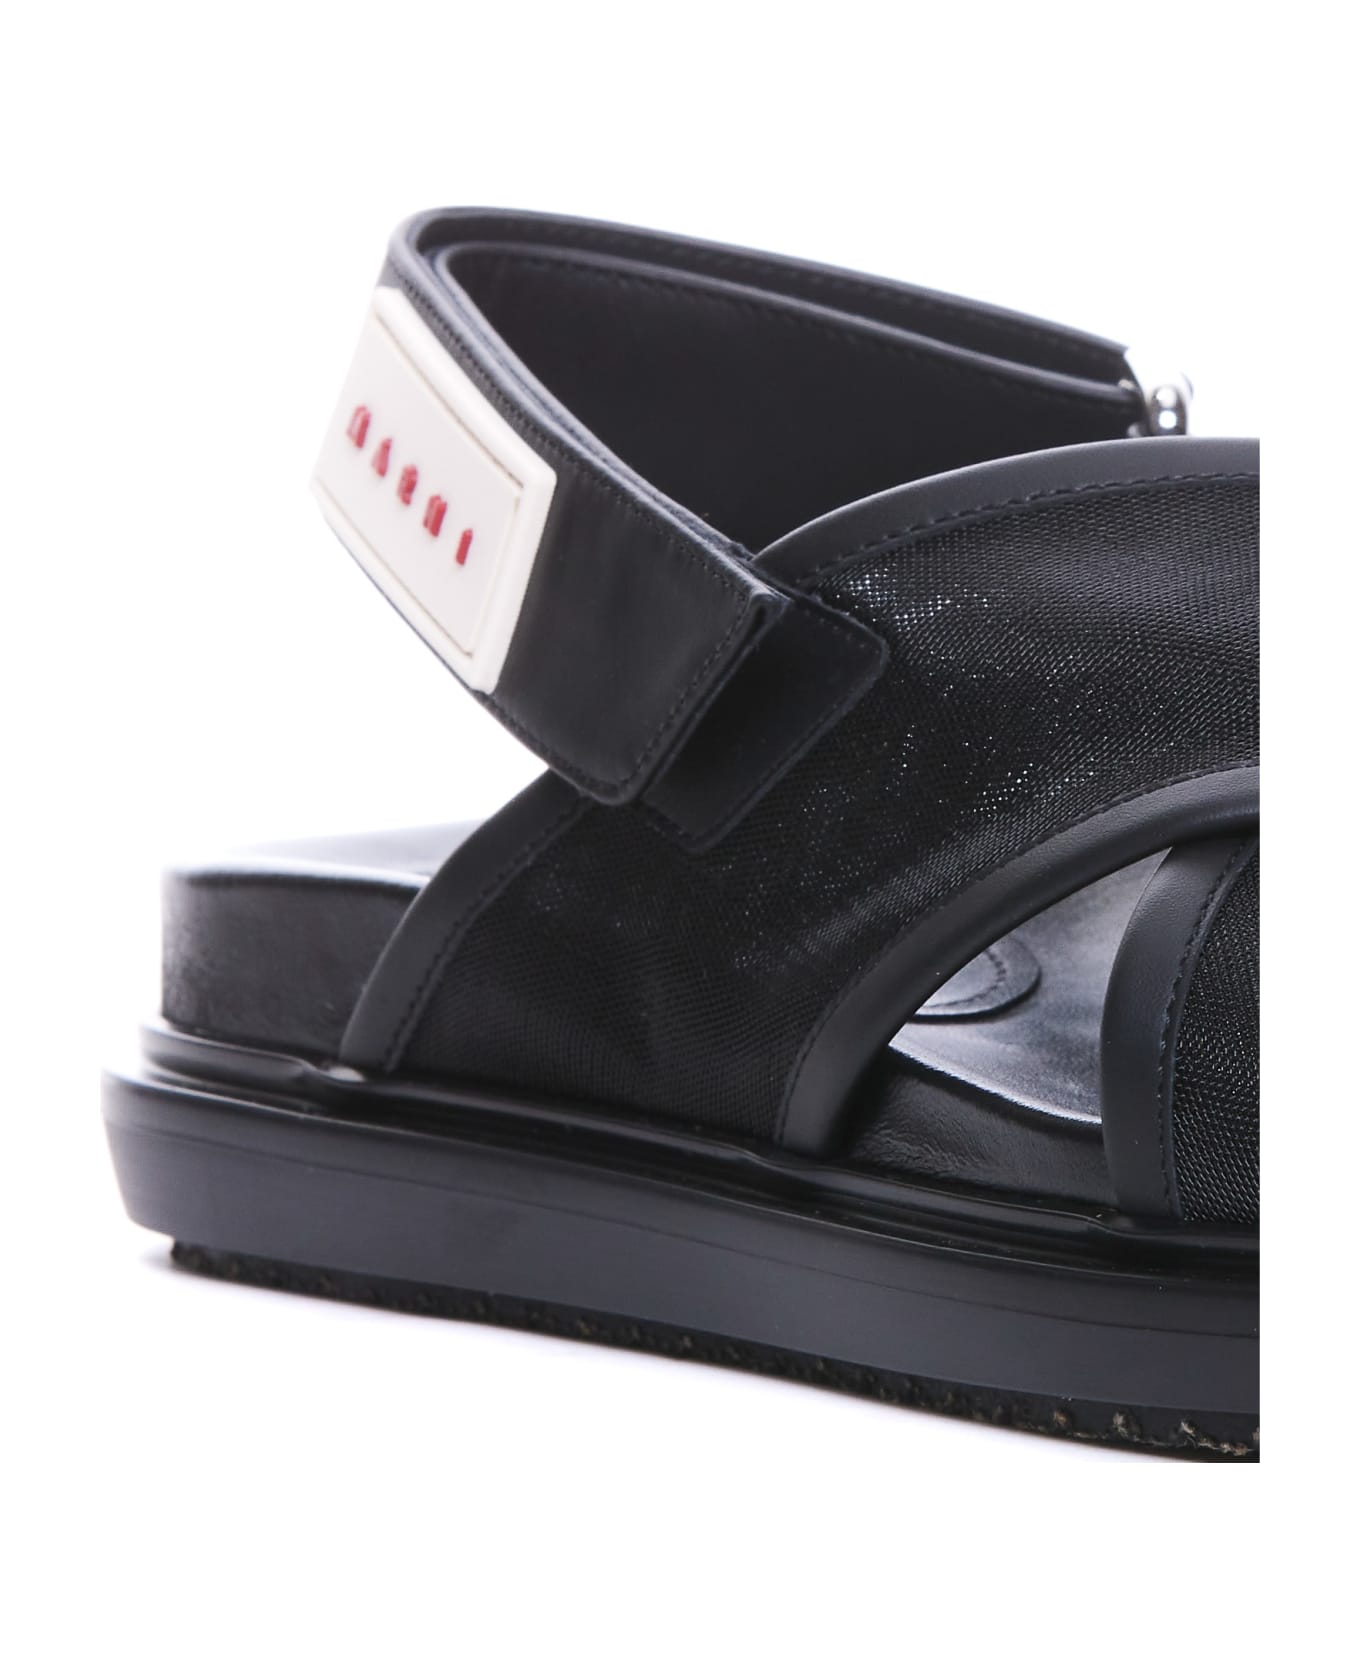 Marni Fussbett Sandals - Black